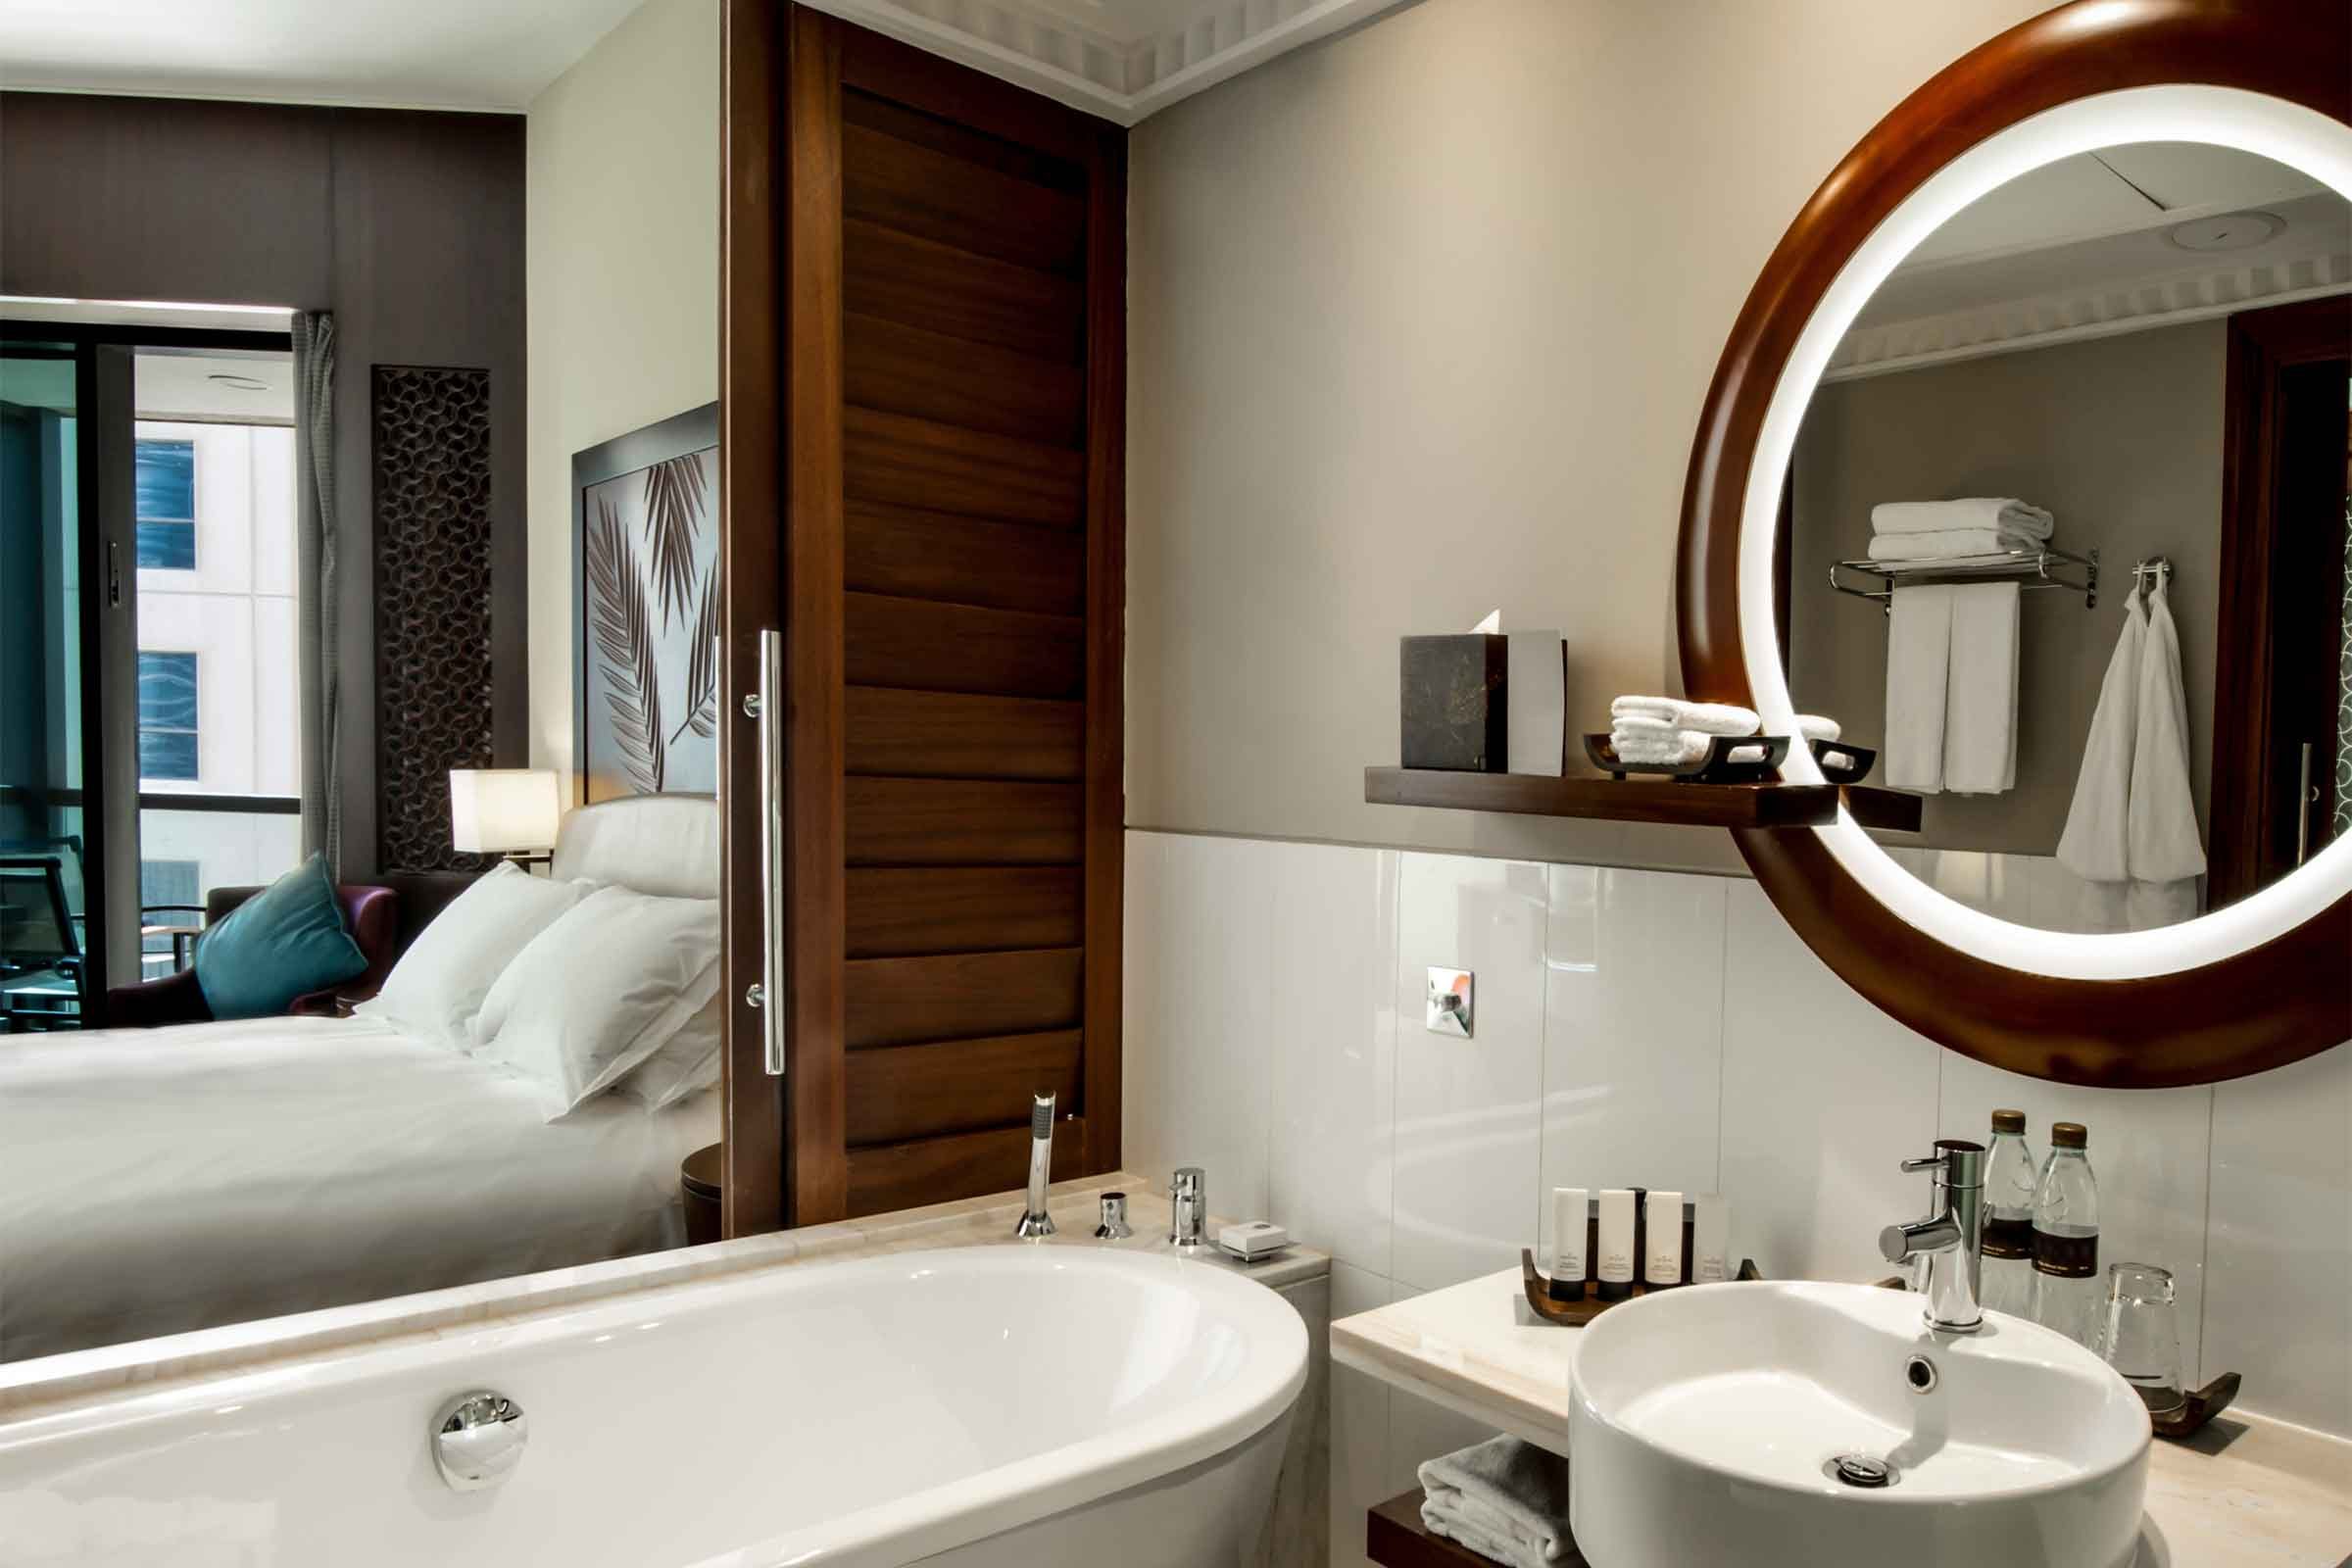 Copie estes 16 truques de decoração de quartos de hotel para tornar sua casa totalmente adorável 